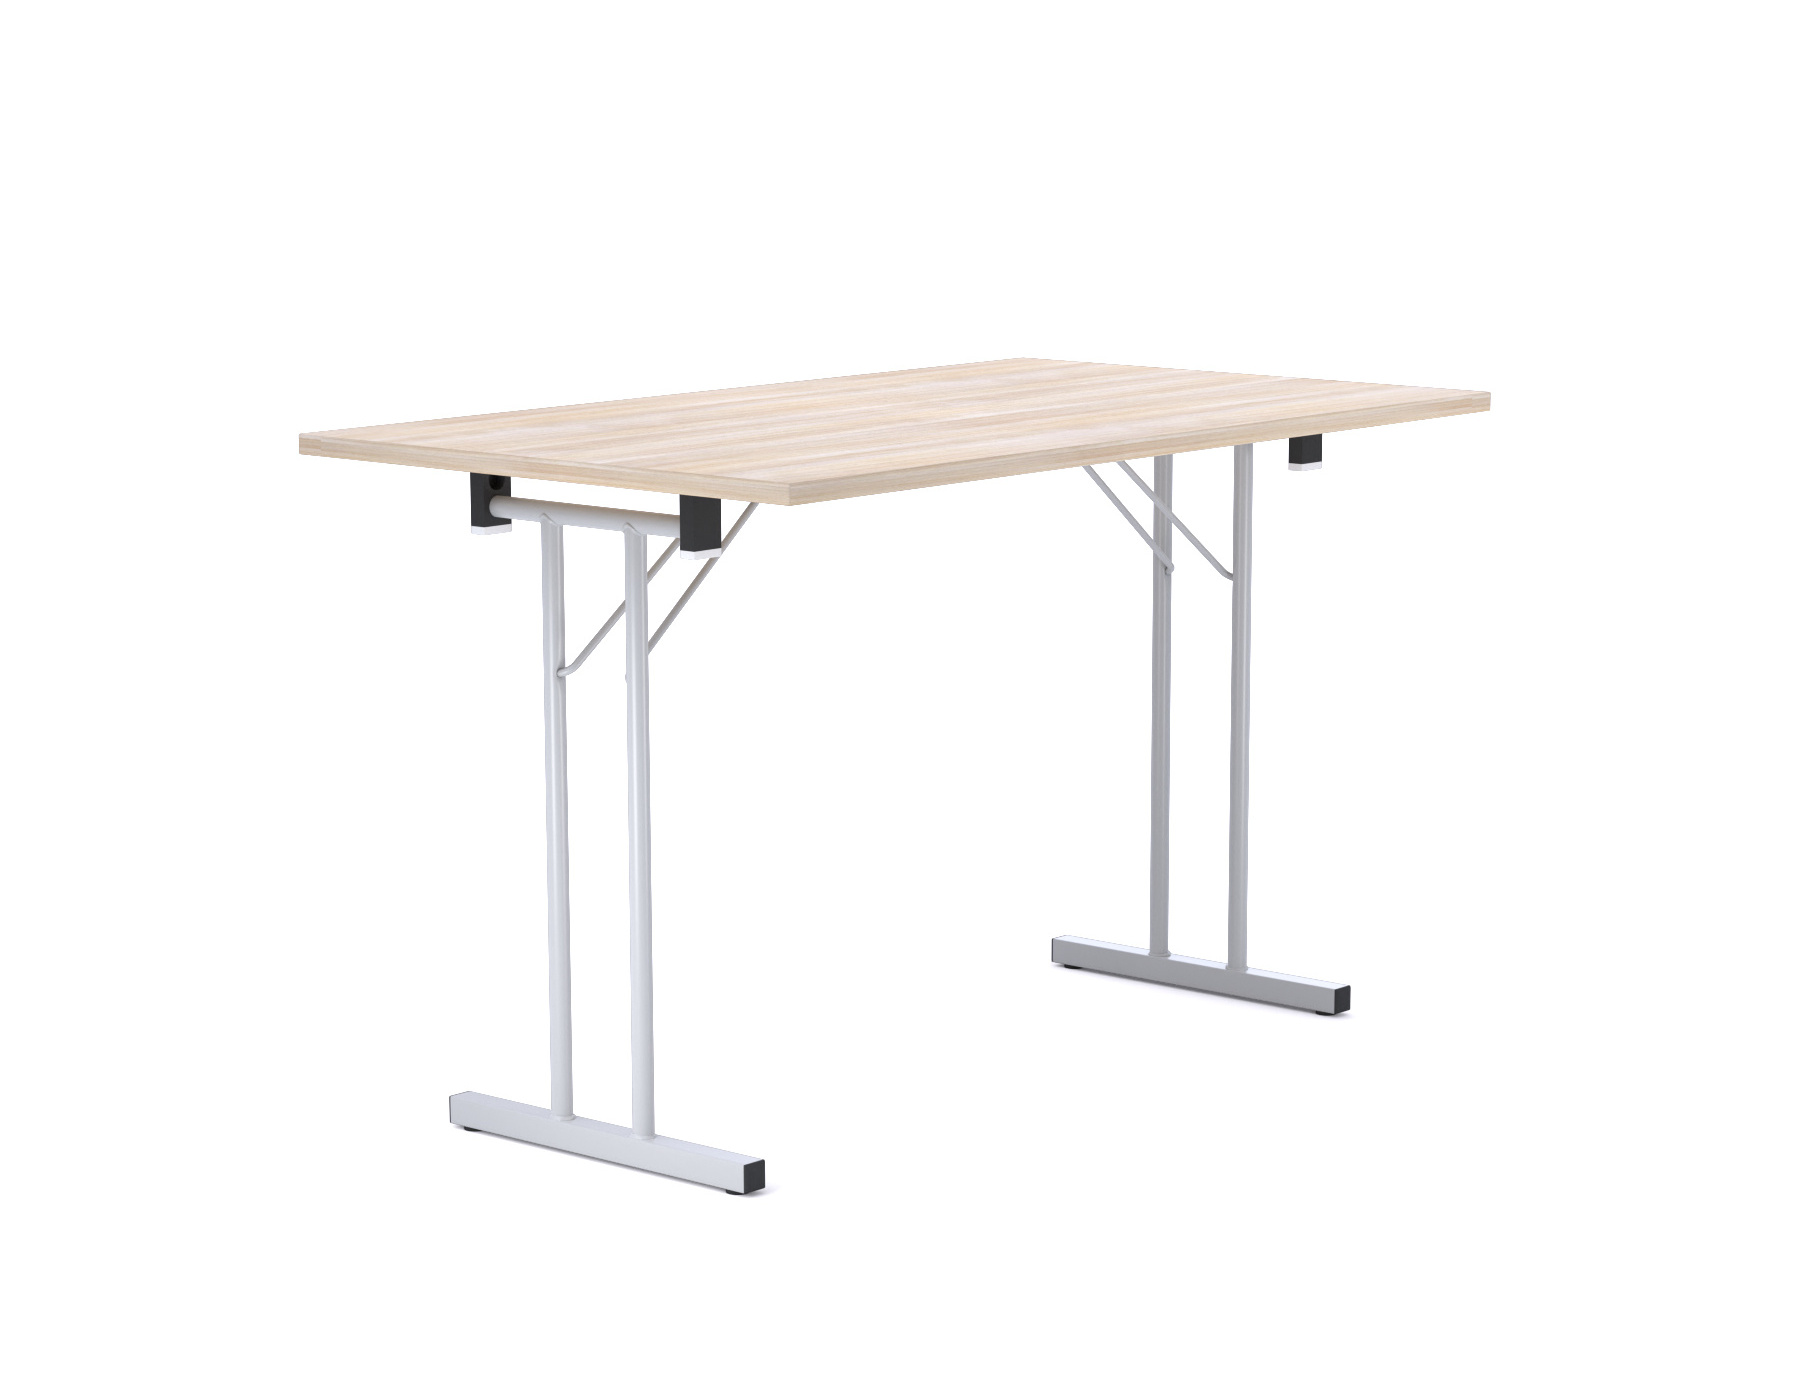 Standard Folding Table 4680-39 Konferenztisch, 120 x 70 cm